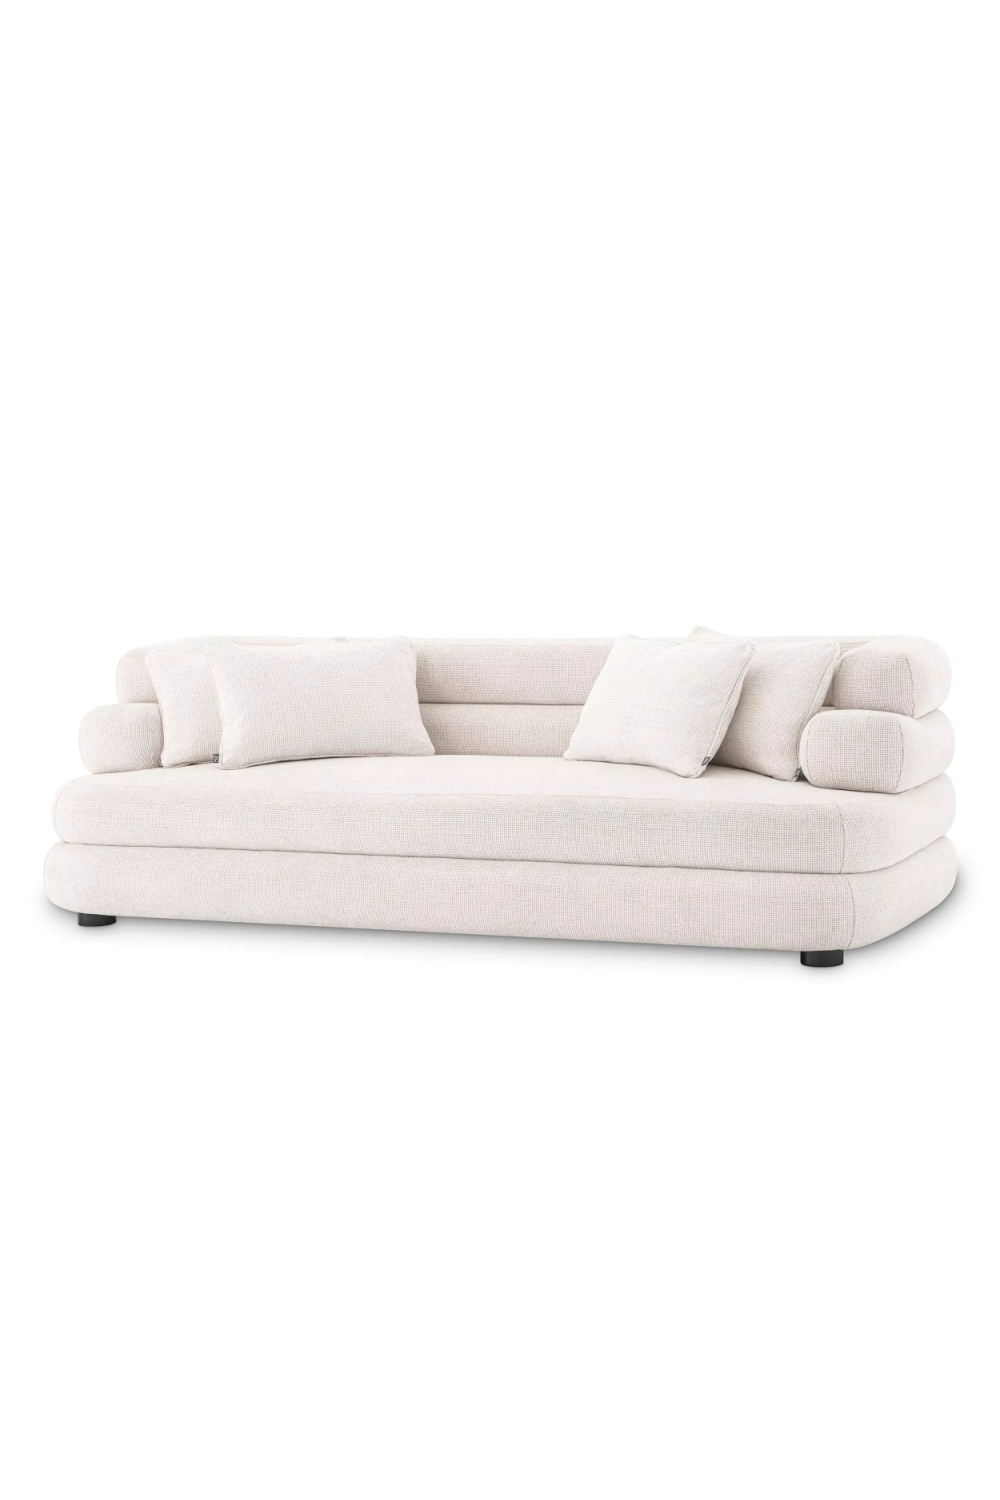 White Fabric Sofa | Eichholtz Malaga | Oroa.com